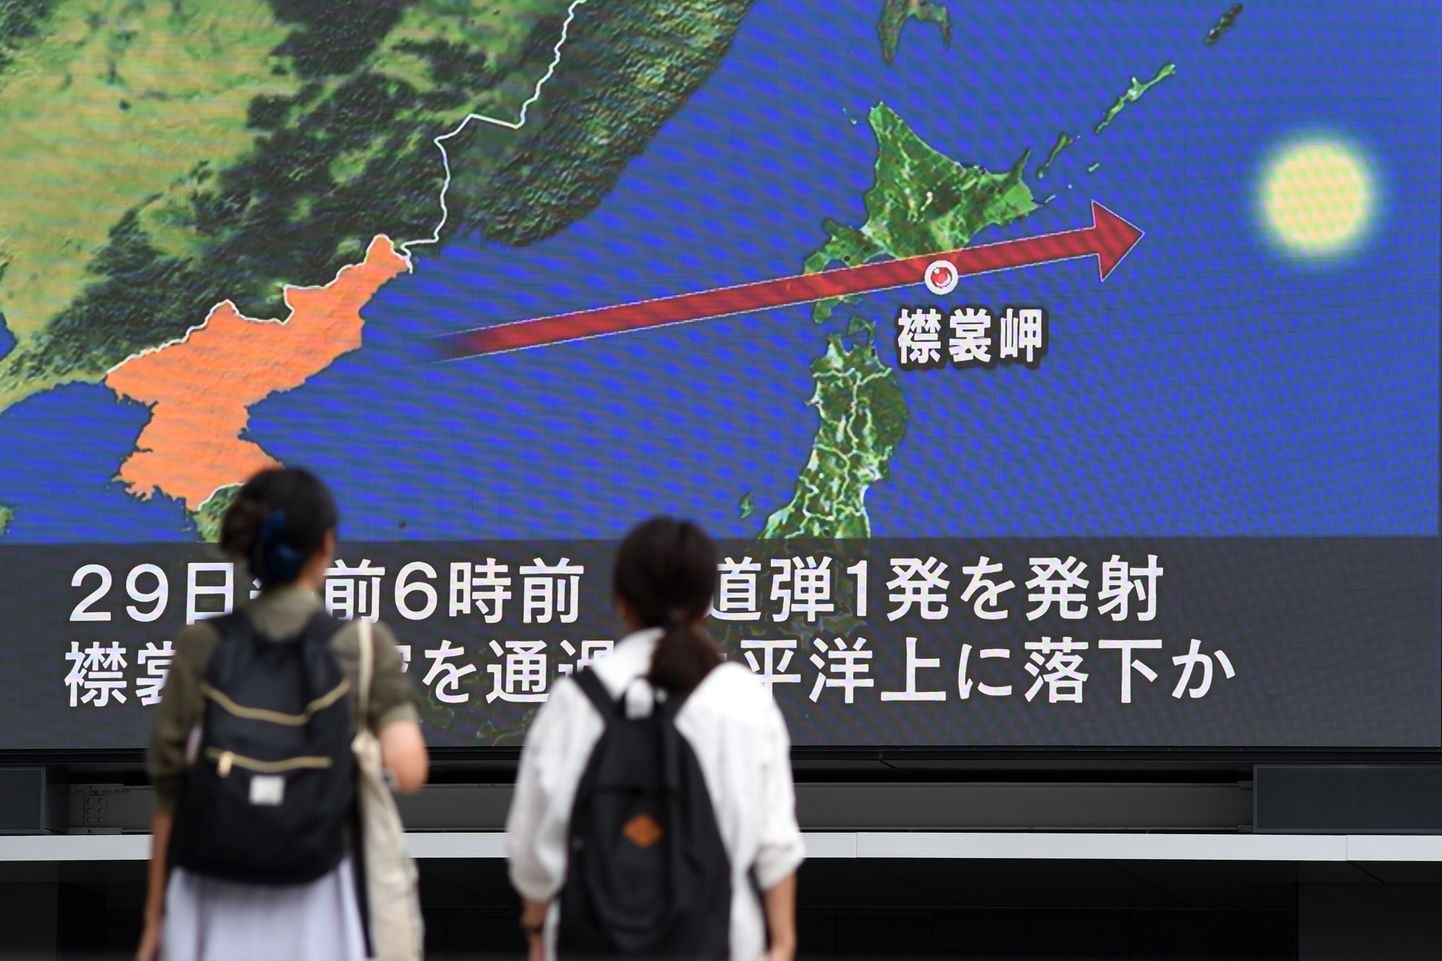 Jalakäijad Jaapanis suurelt ekraanilt uudist raketi kohta lugemas.